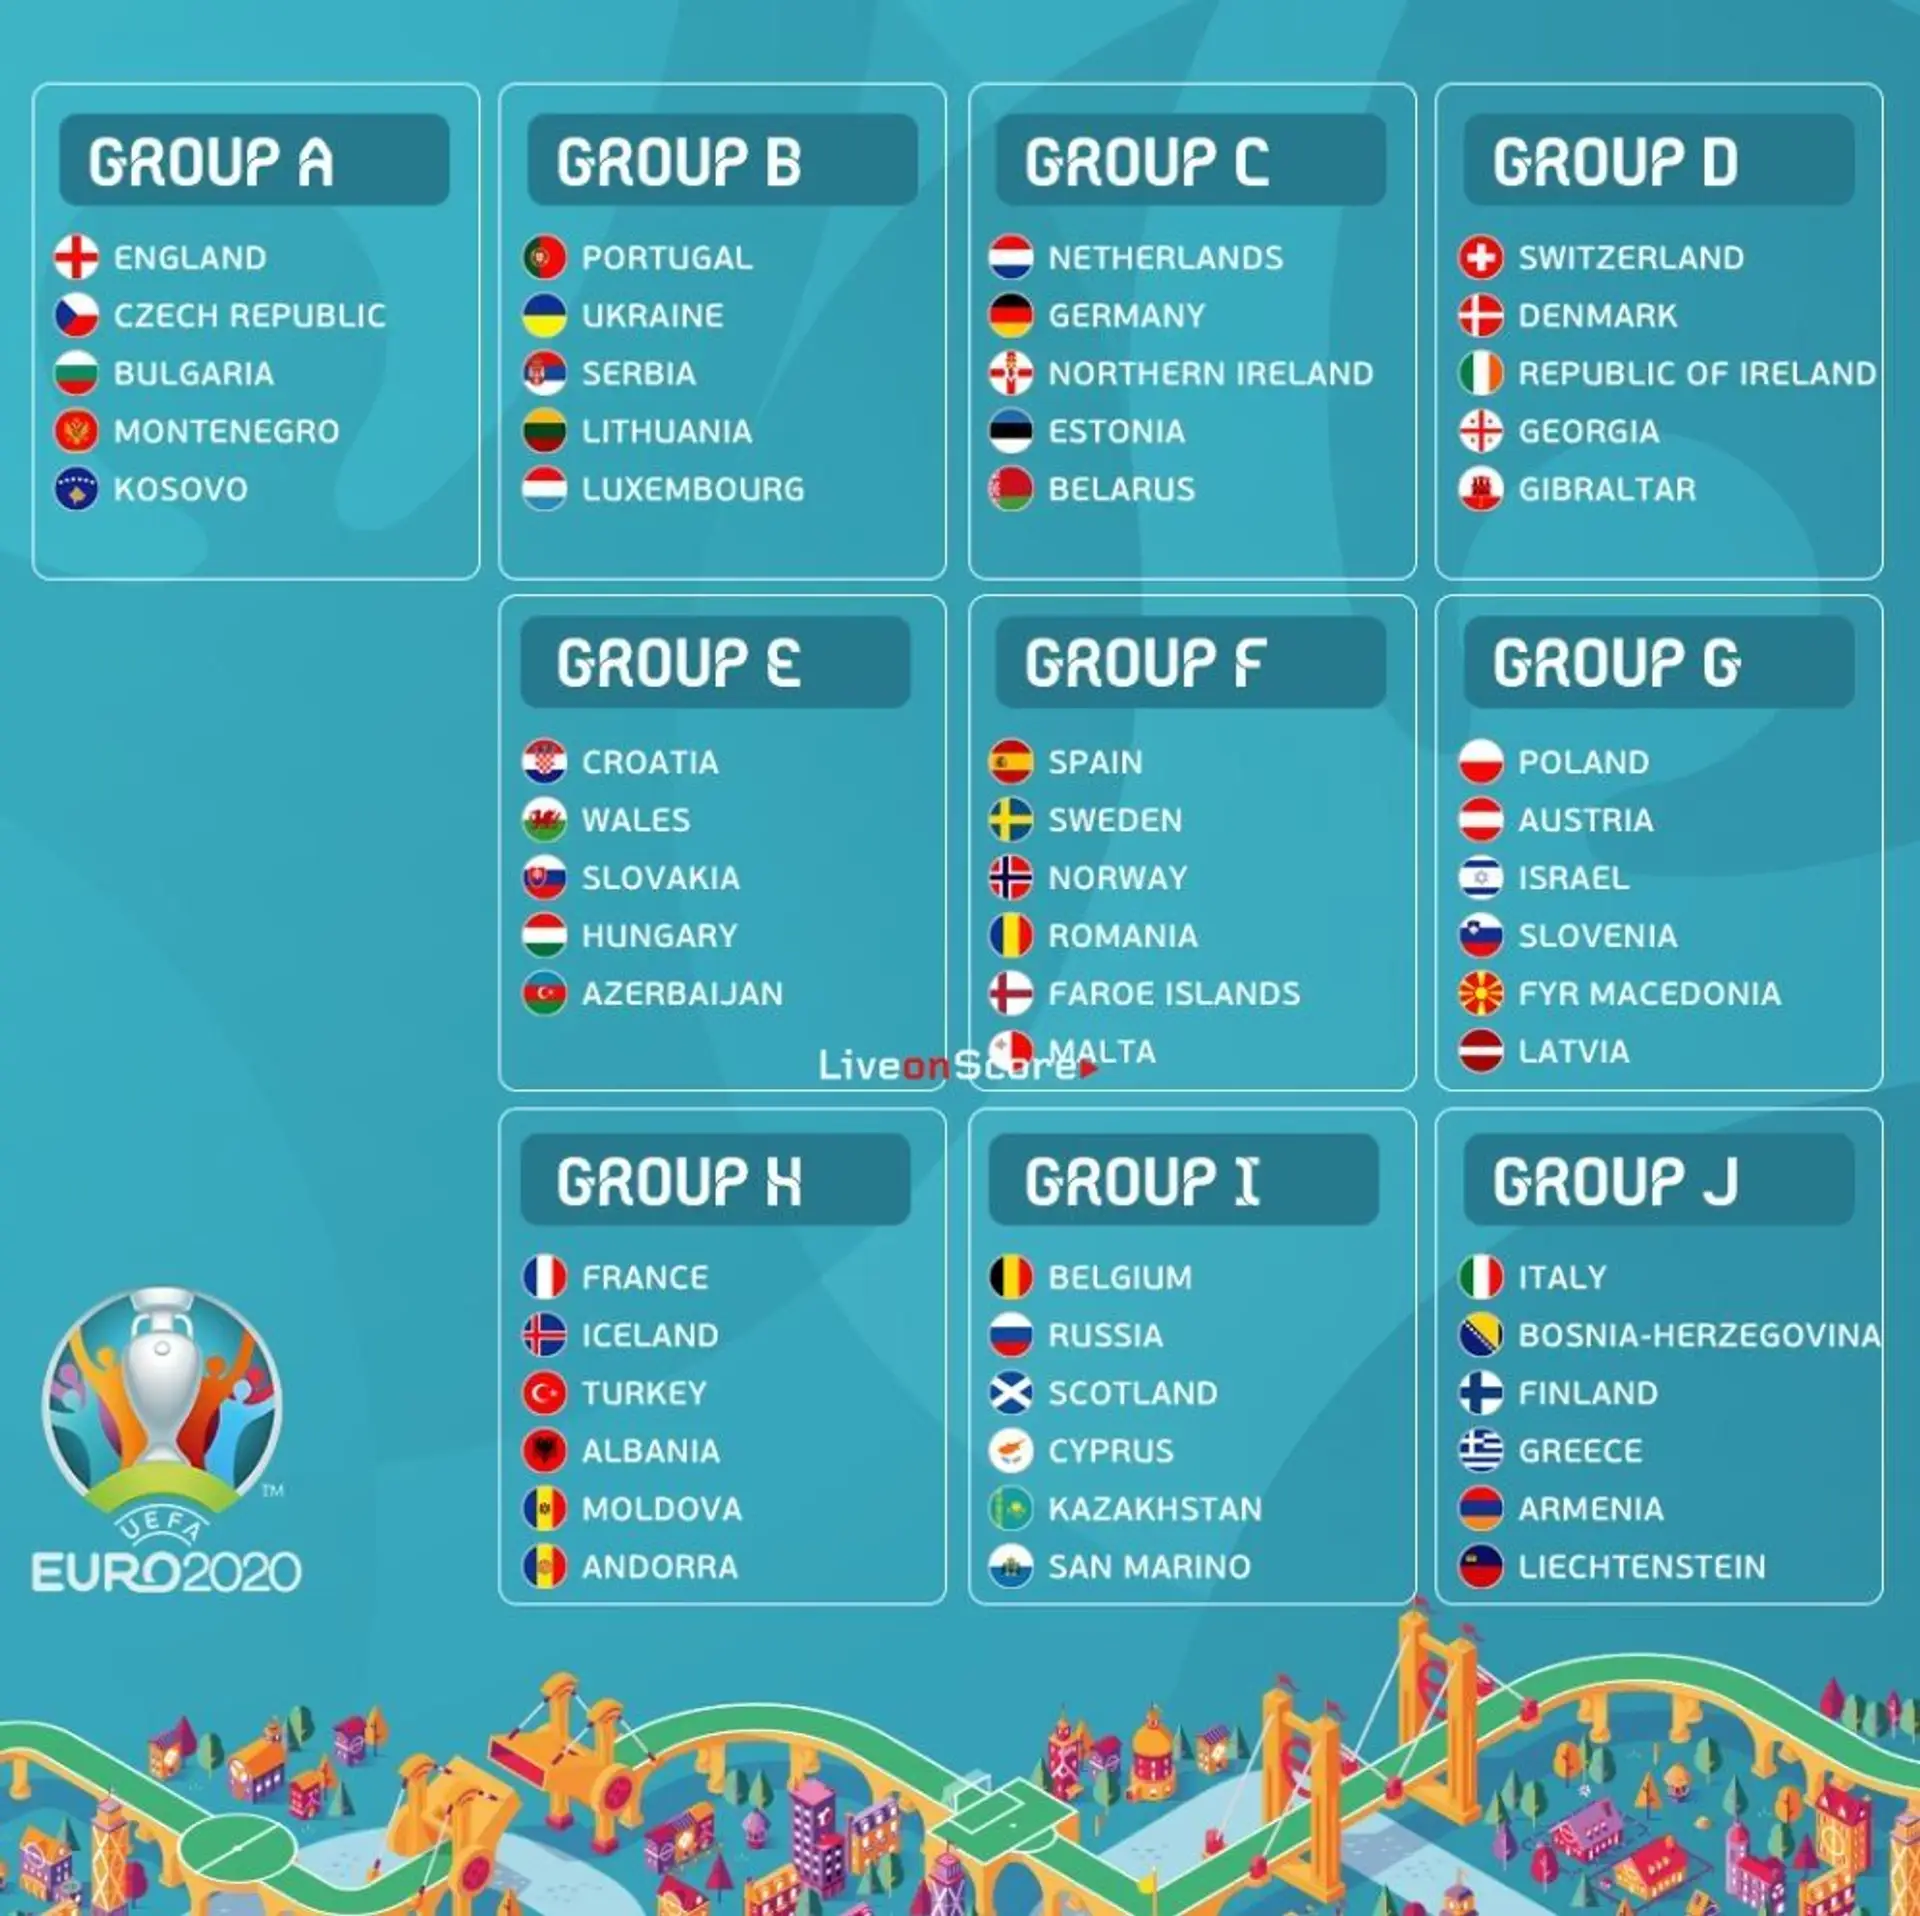 EURO 2020 groups